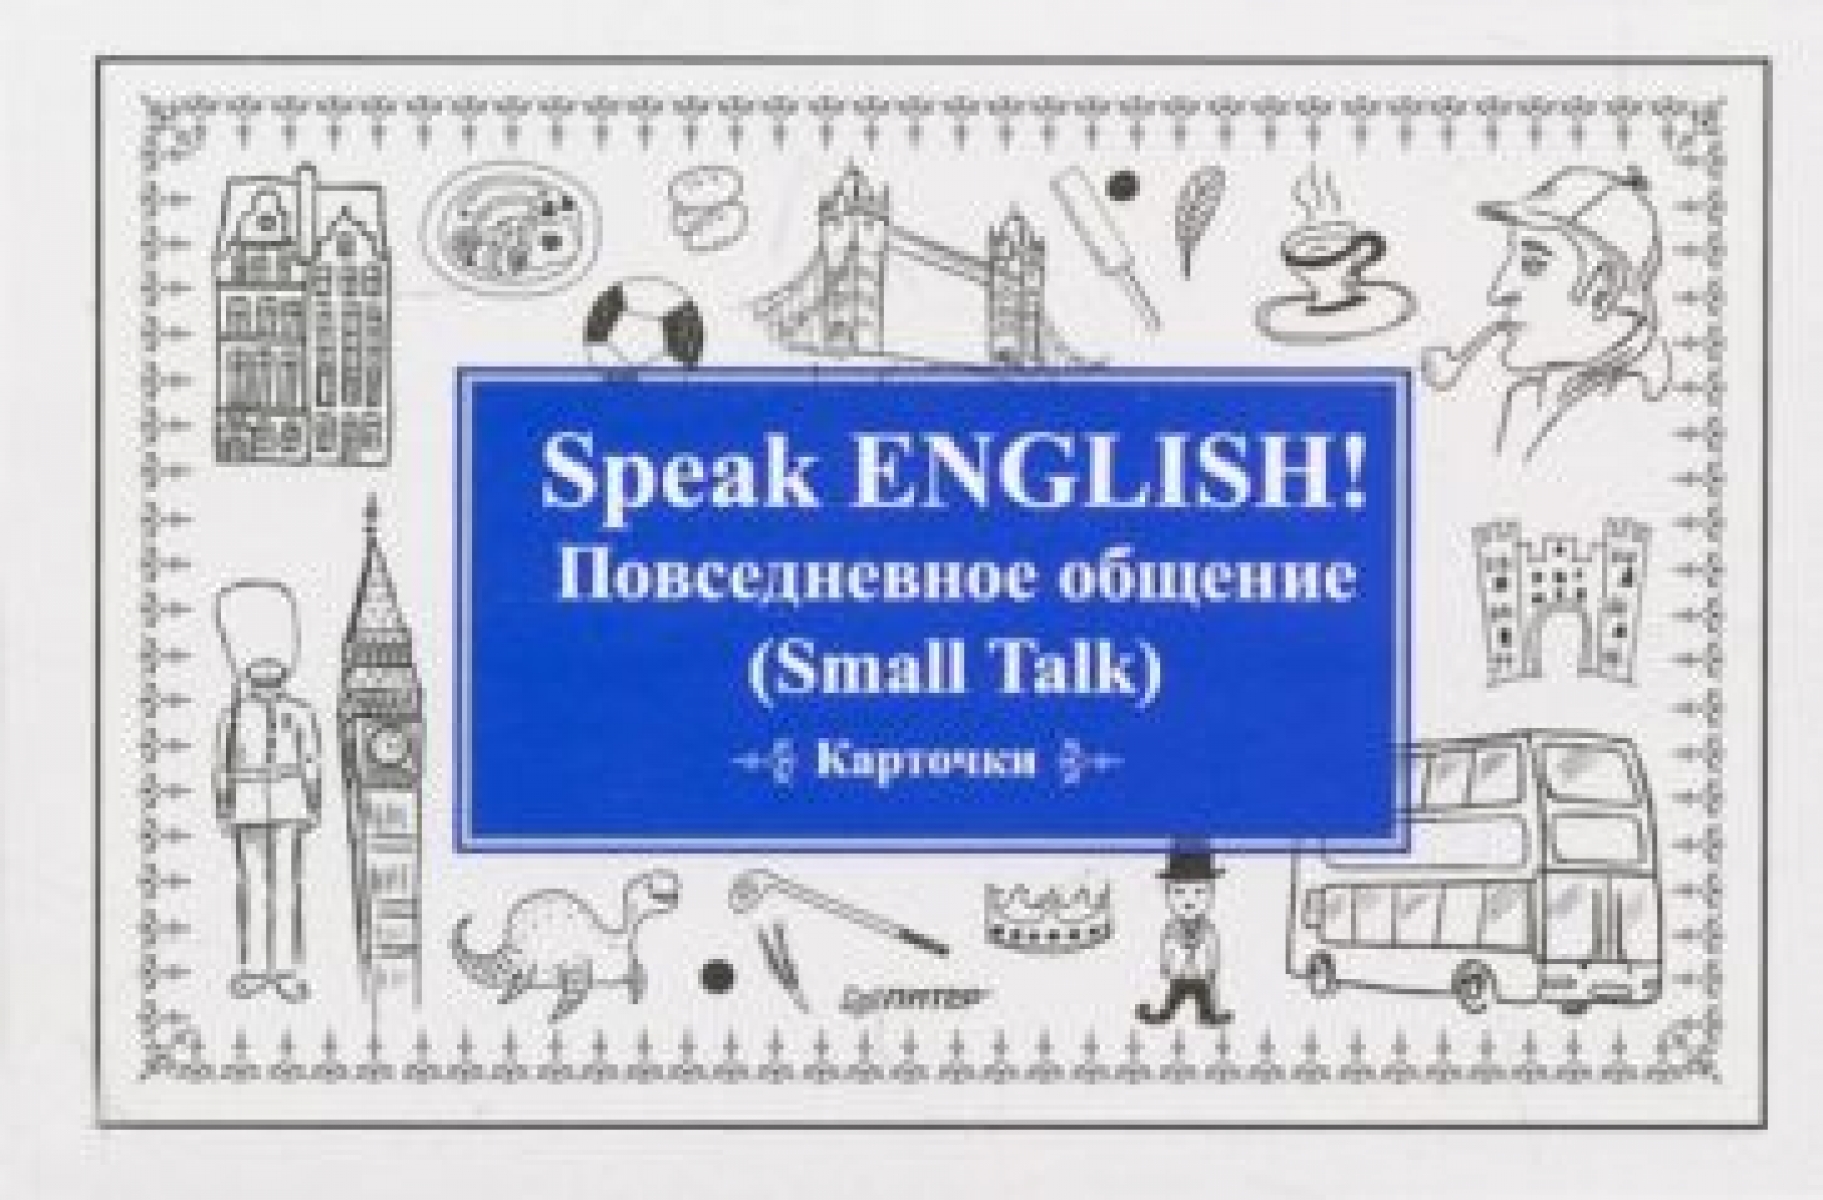  .. Speak ENGLISH!   (Small Talk)  